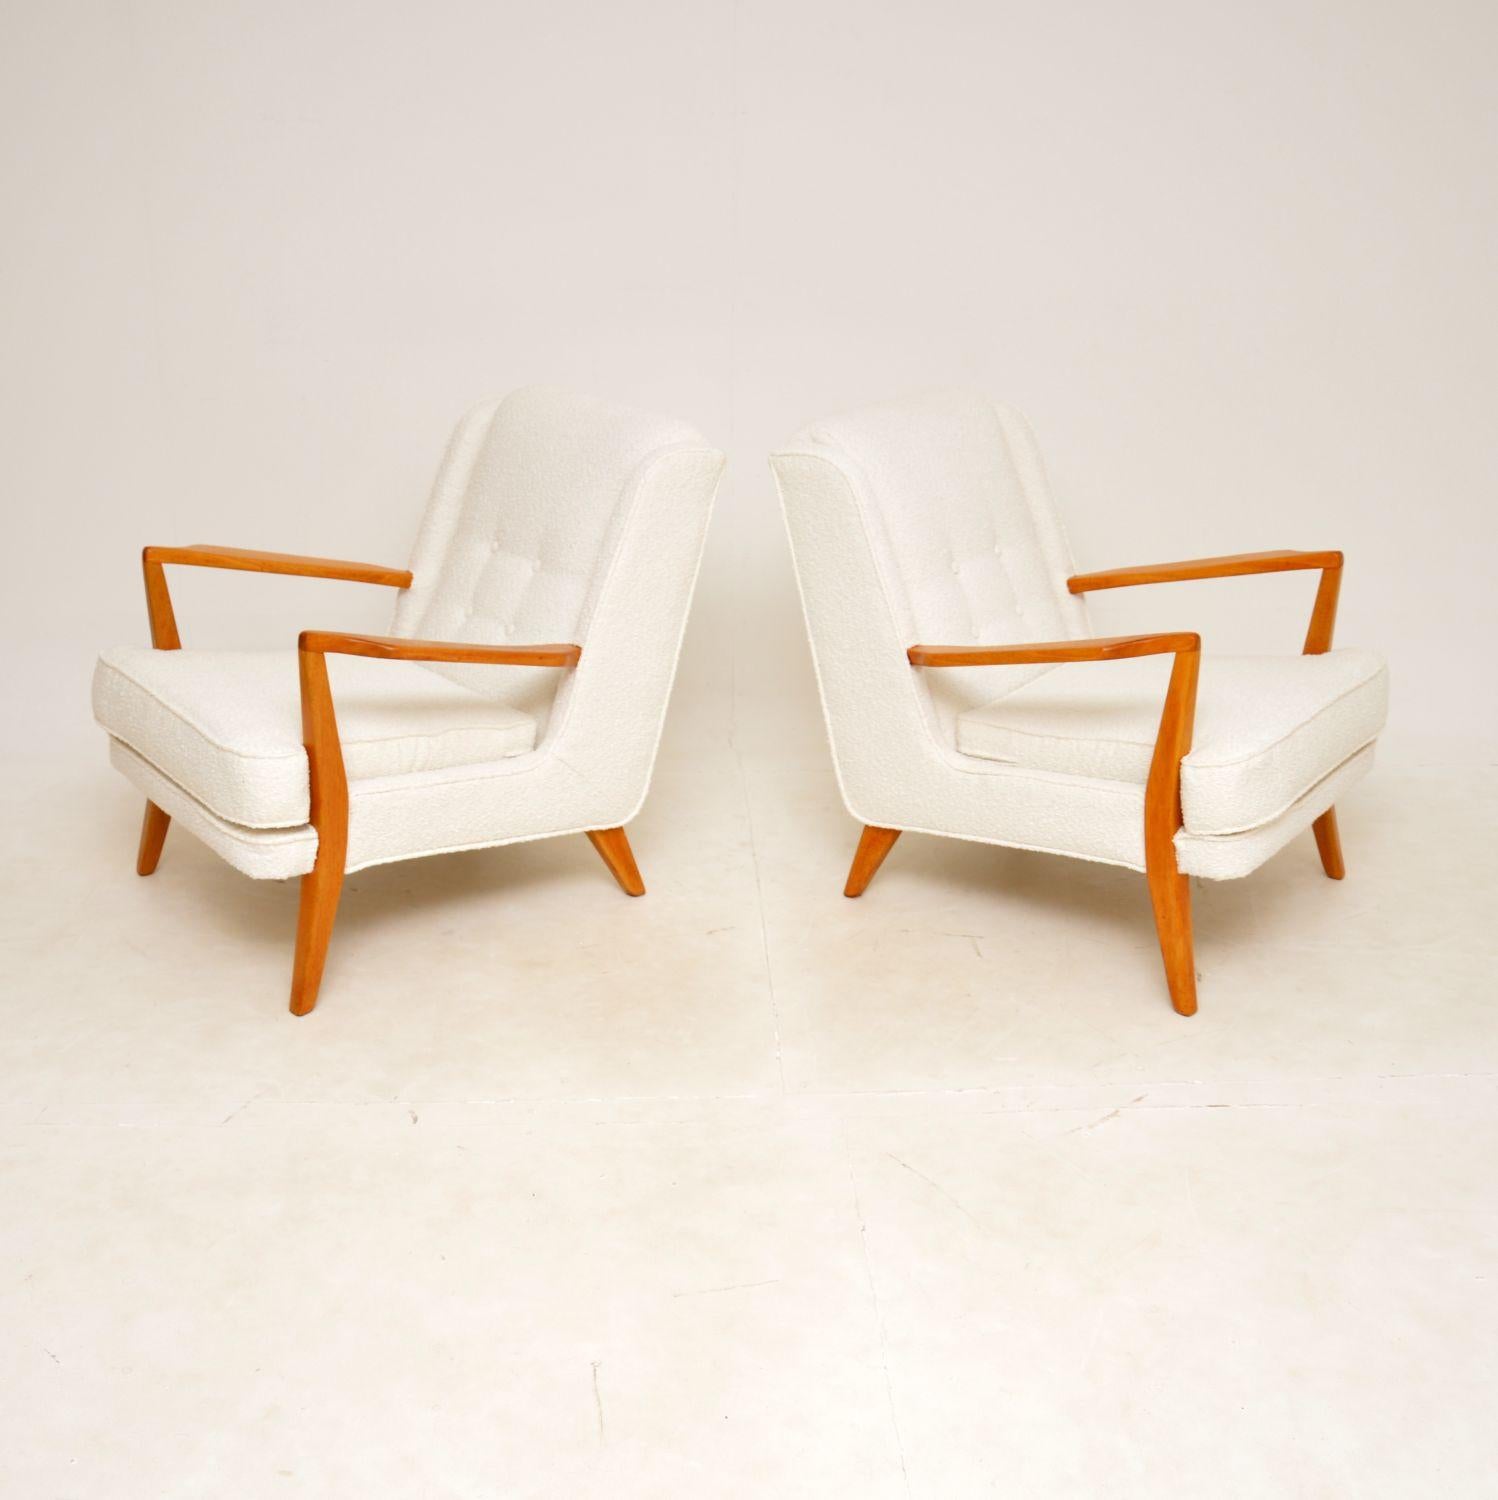 Une superbe et extrêmement rare paire de fauteuils vintage de G-Plan. Ils ont été fabriqués en Angleterre et datent des années 1950-60.

La qualité est exceptionnelle, ils sont très élégants et confortables. Les cadres sont en bois massif clair,